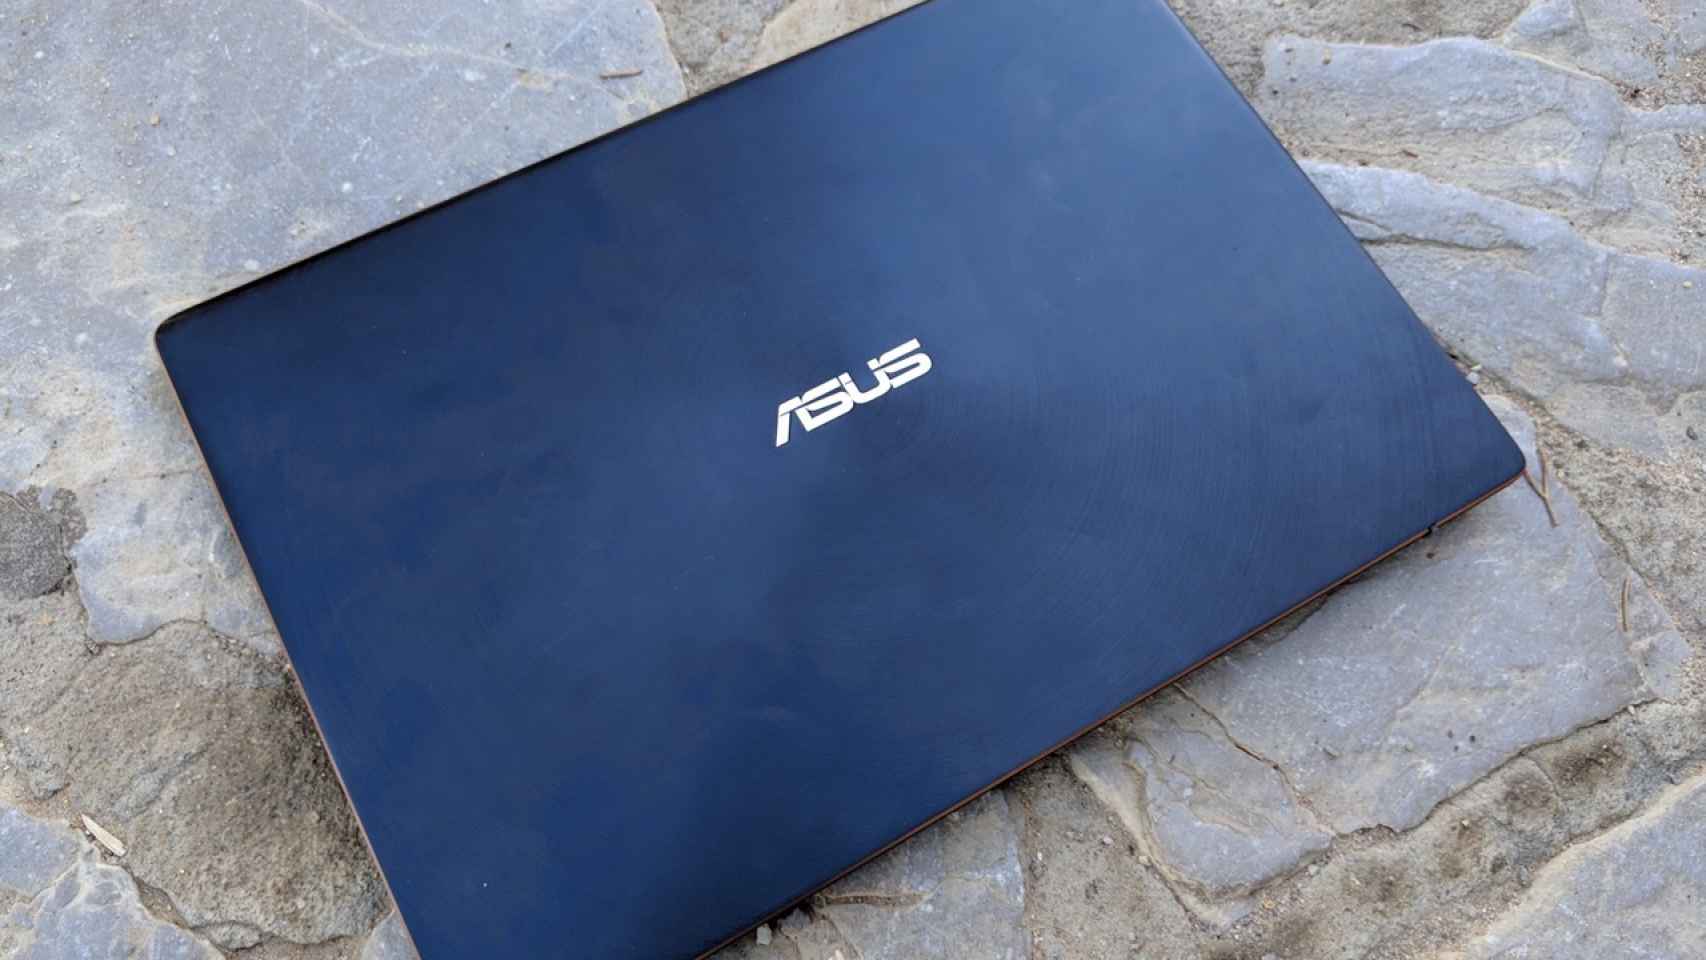 Análisis del Asus Zenbook S, el mejor portátil para escribir